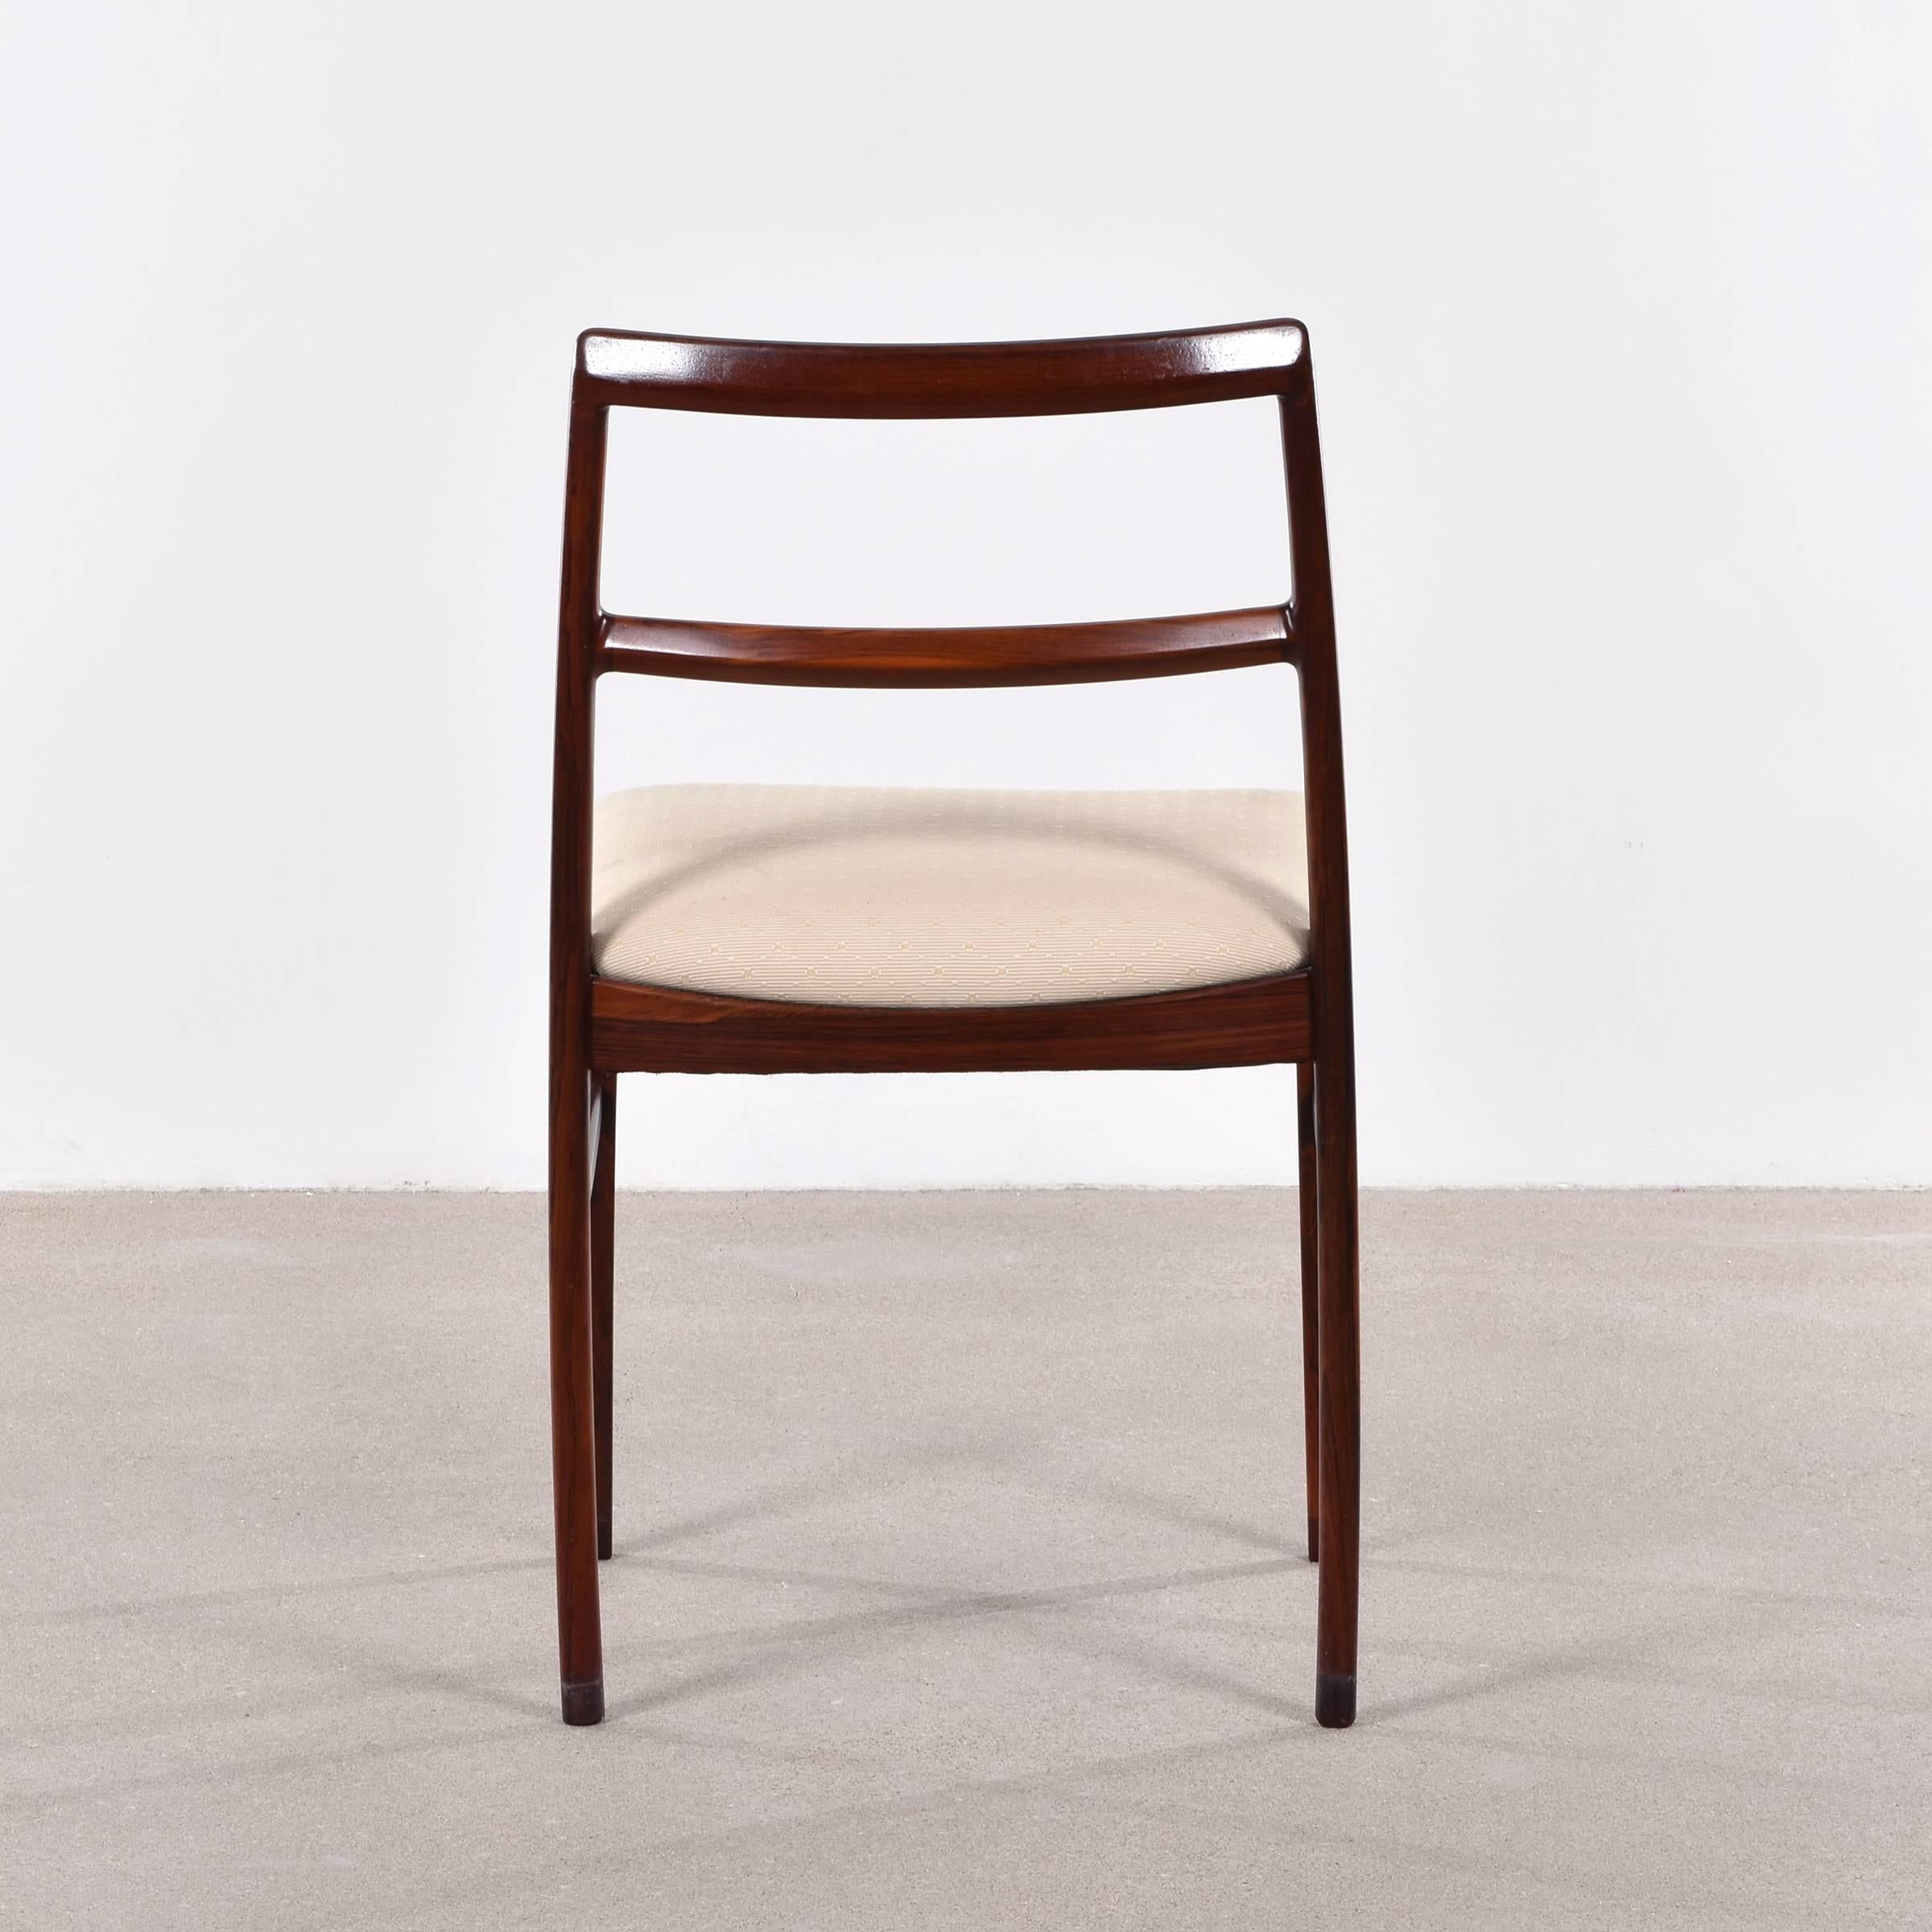 Scandinavian Modern Arne Vodder Model 430 Dining Chairs for Sibast Møbler